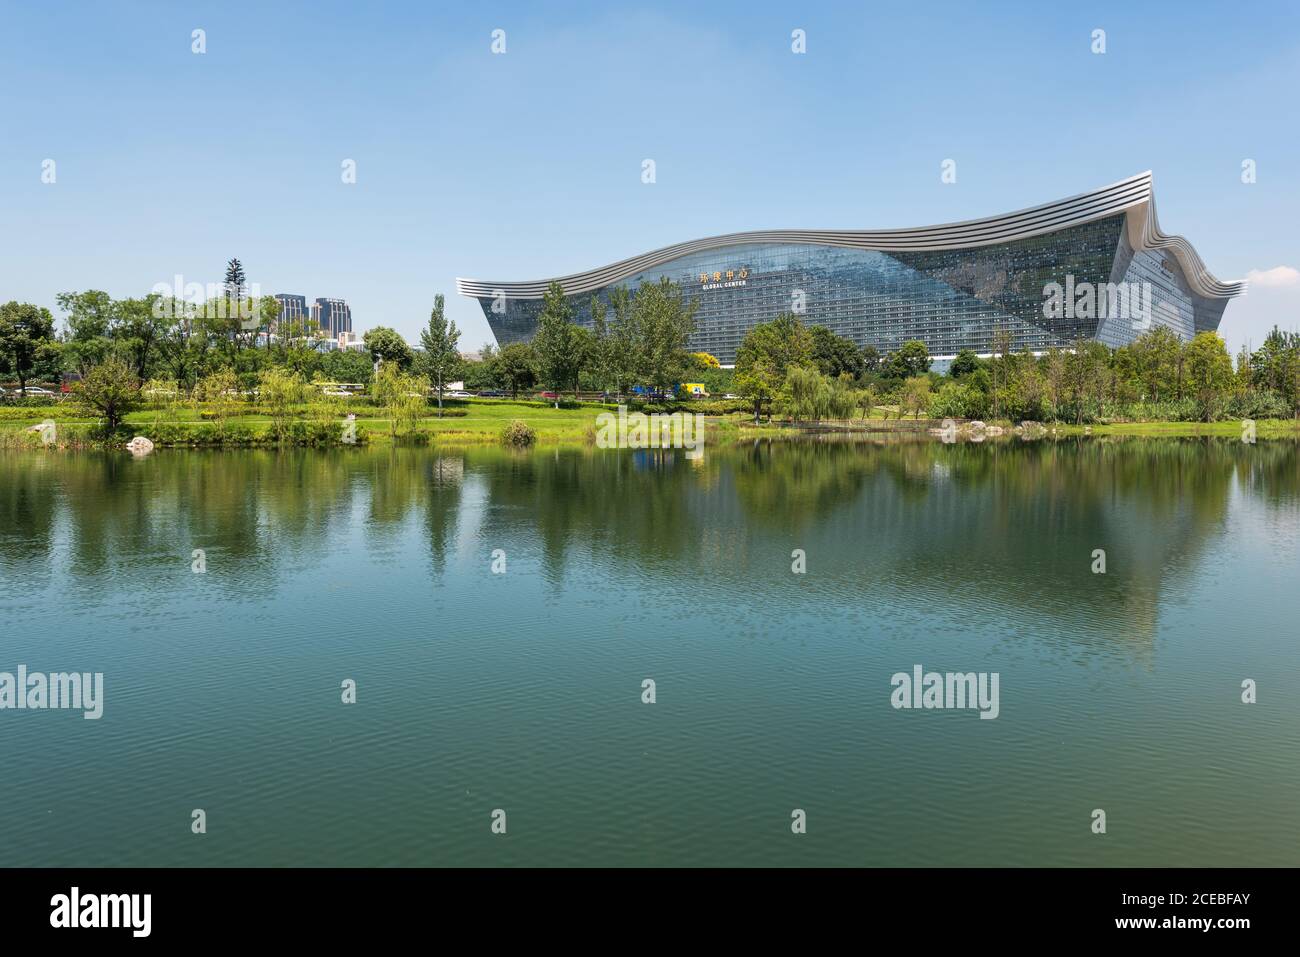 Chengdu, Provinz Sichuan, China - 26. Aug 2020 : Gebäude des New Century Global Center, das an einem sonnigen Tag mit klarem blauen Himmel in einem See reflektiert wird Stockfoto